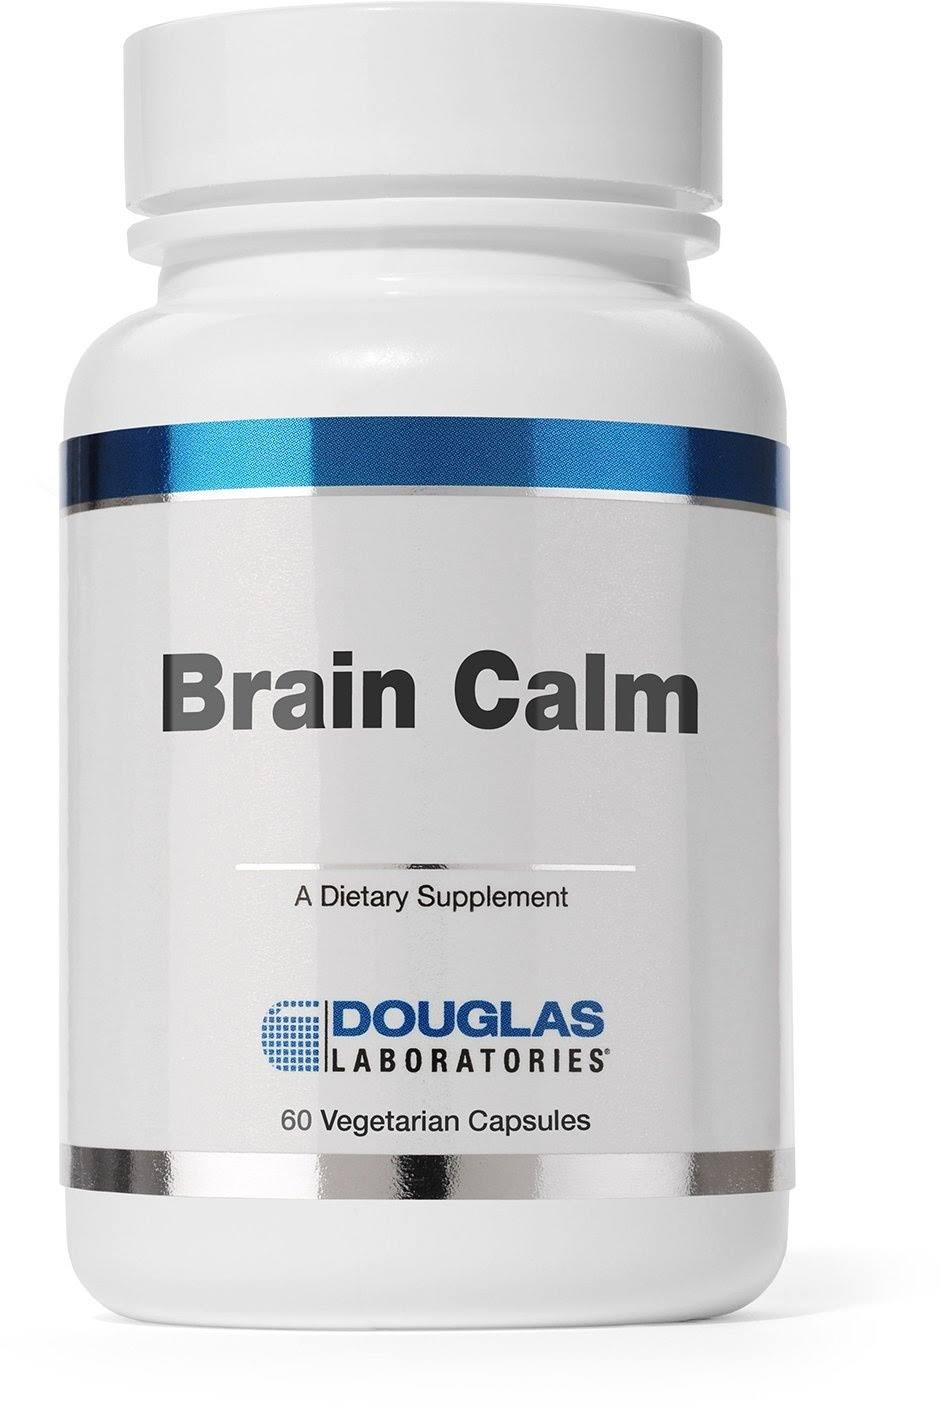 Douglas Laboratories Brain Calm Supplements - 60ct